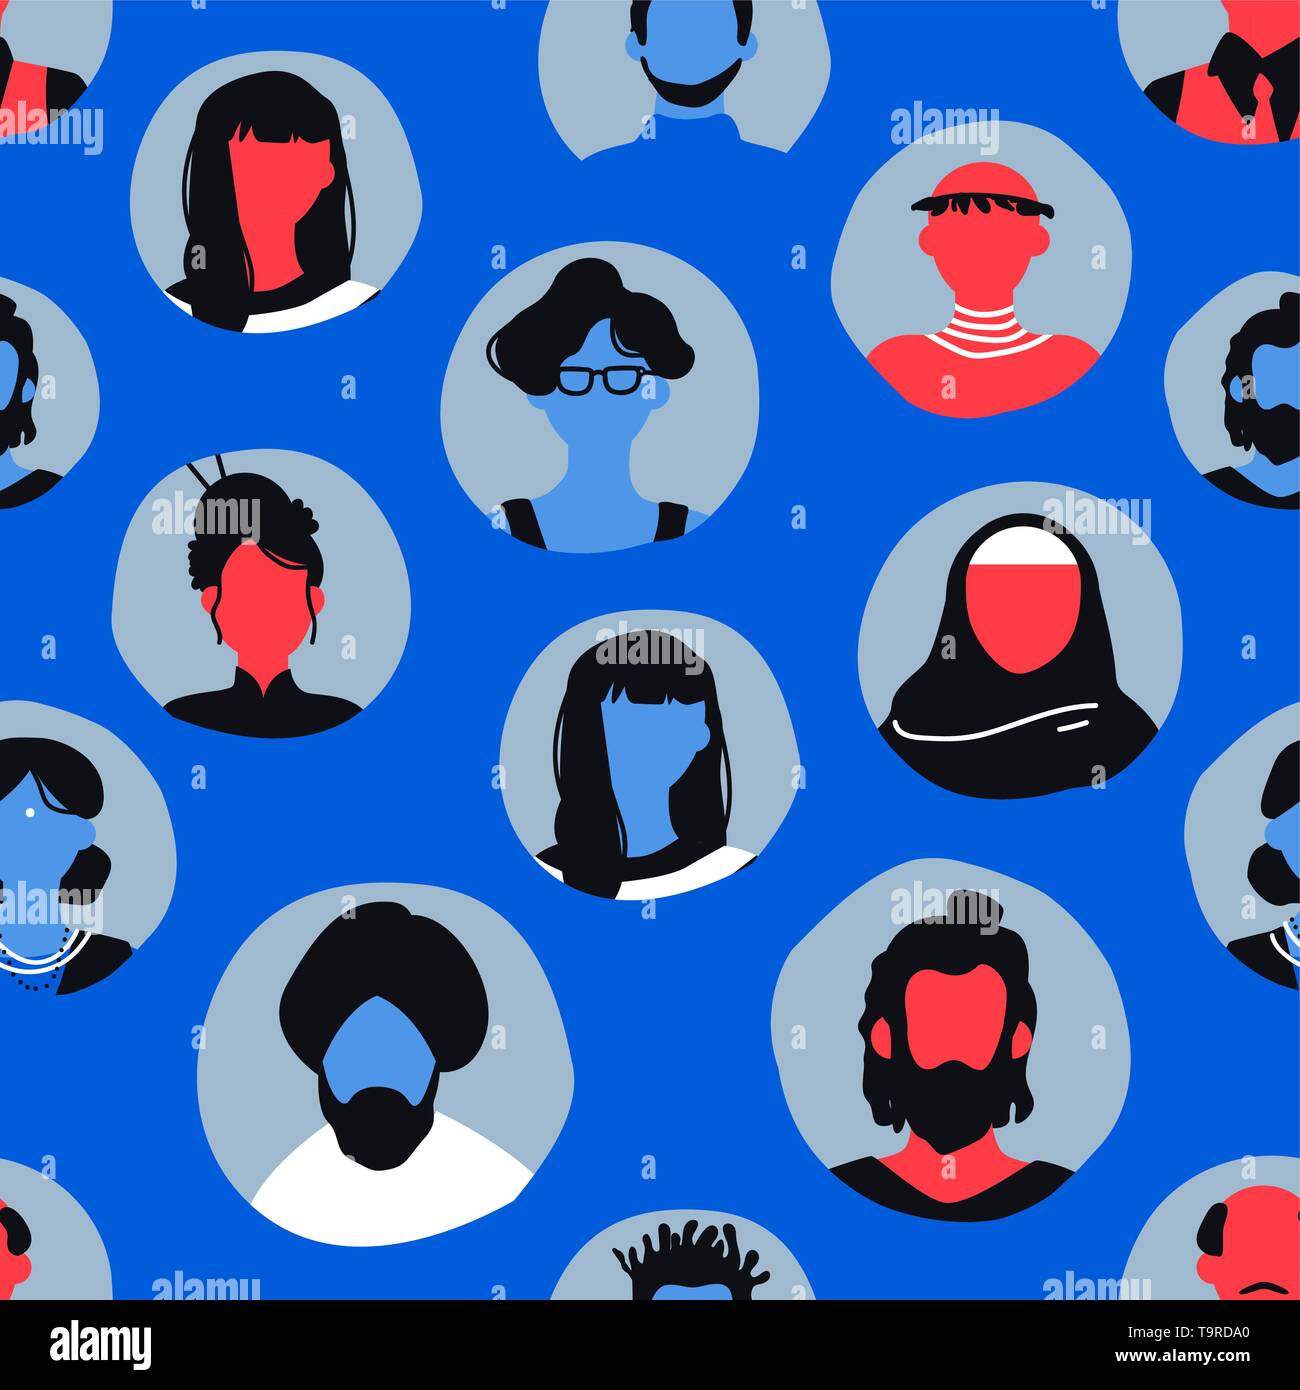 Menschen icons nahtlose Muster in blauer Farbe. Diverse Mann und Frau avatar Hintergrund für die internationale Gemeinschaft oder Internet Kommunikation Konzept. Stock Vektor